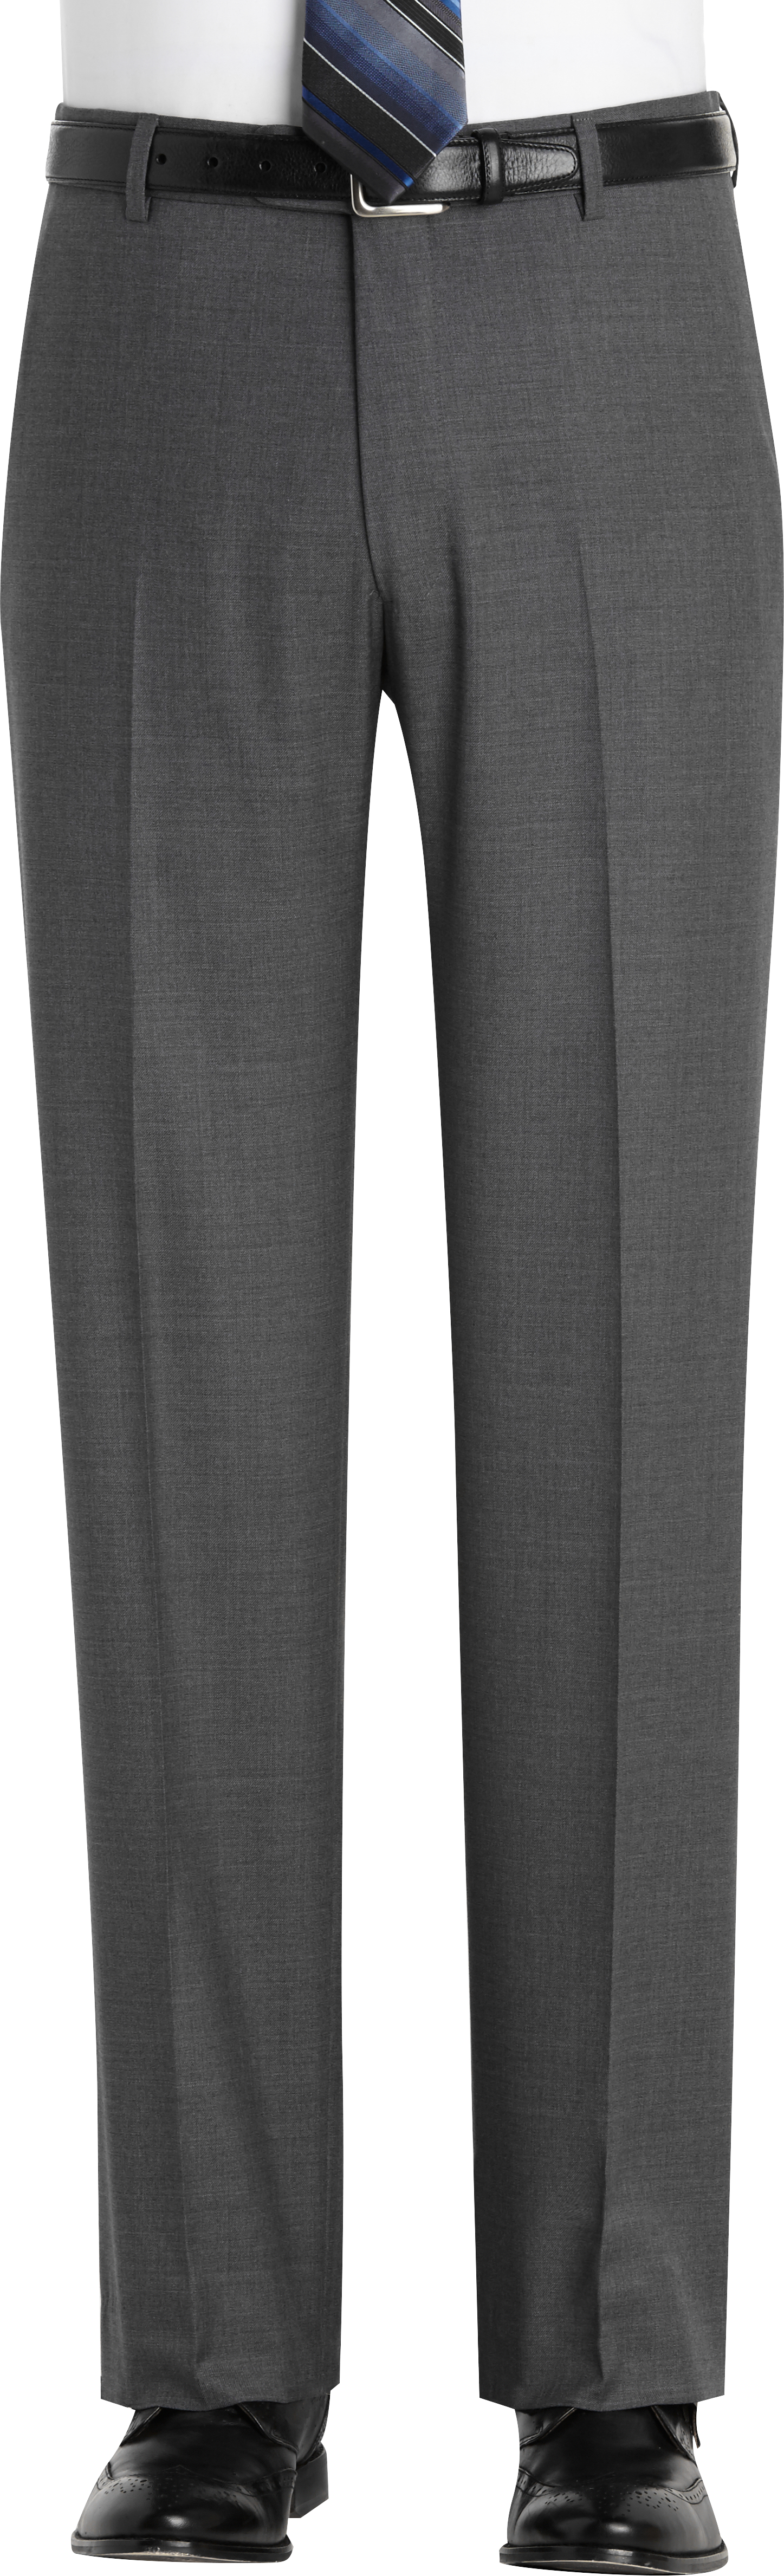 Joseph Abboud Modern Fit Suit Separates Pants, Gray